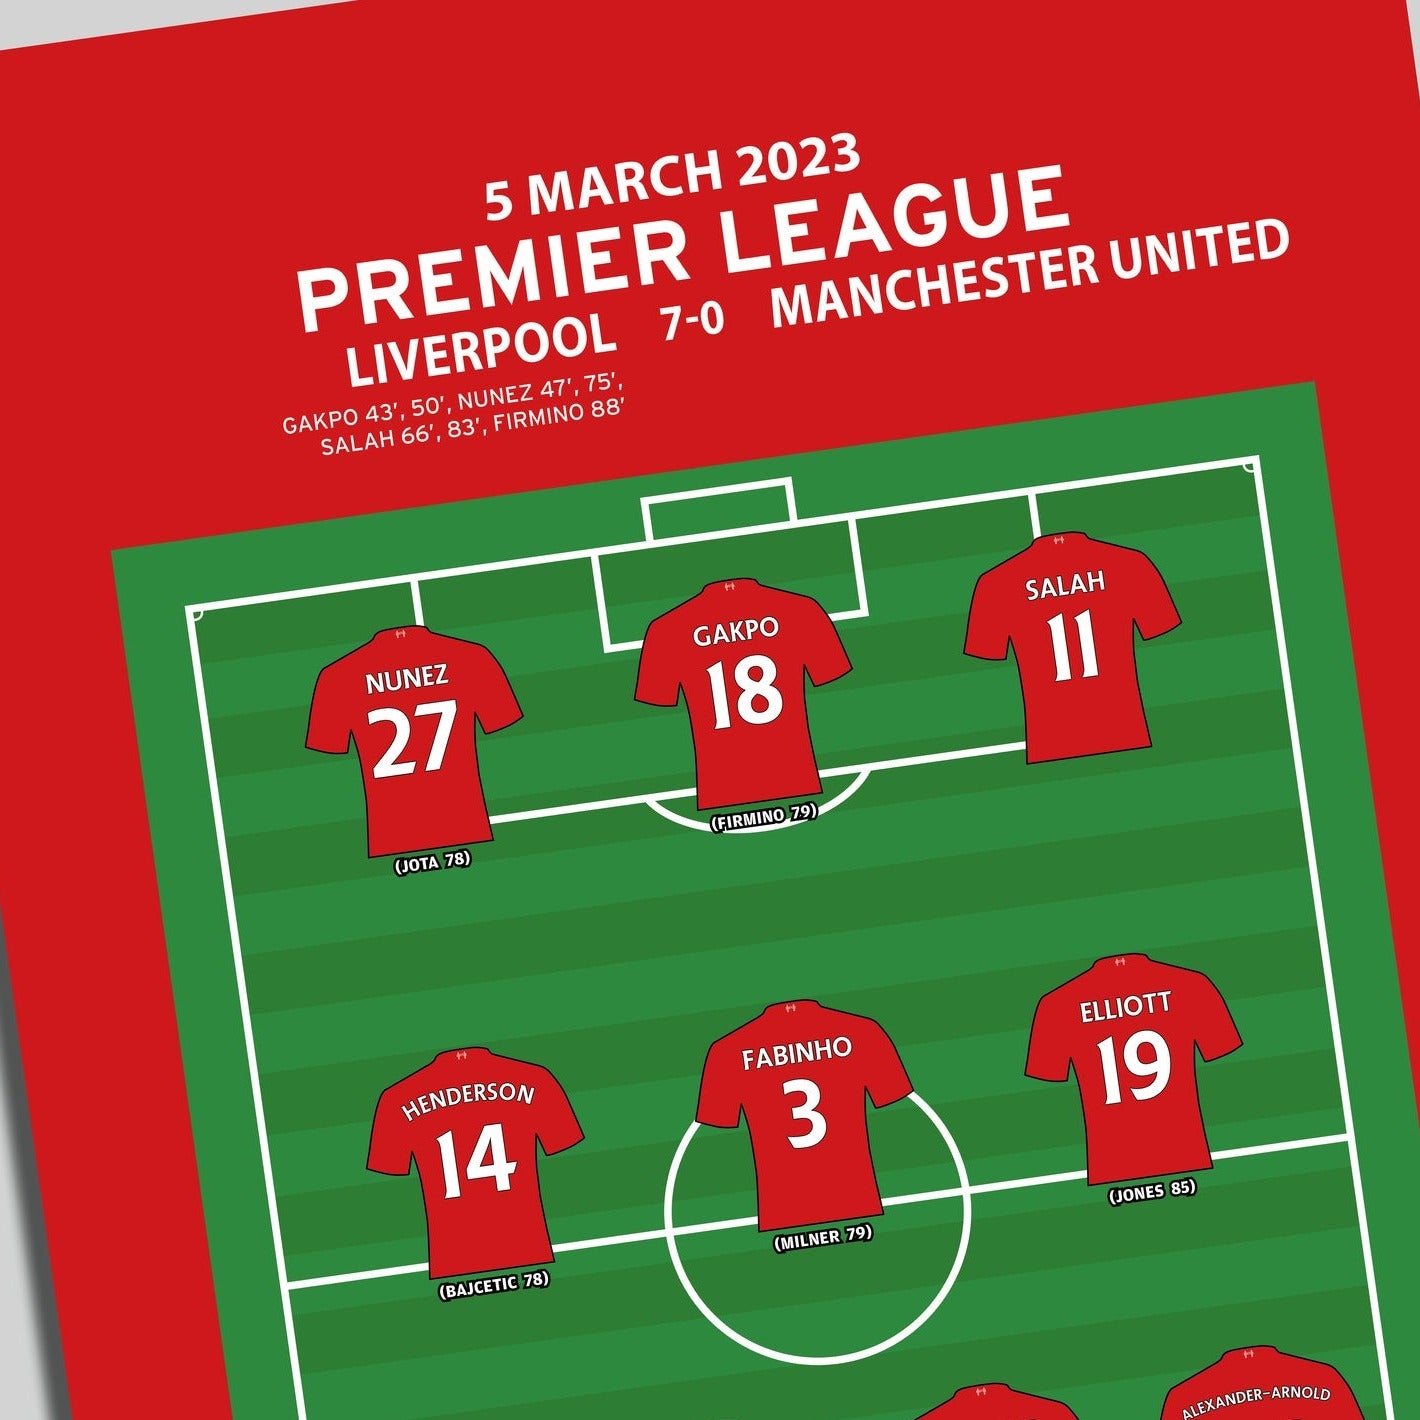 Liverpool 7-0 Manchester United - Premier League 2023